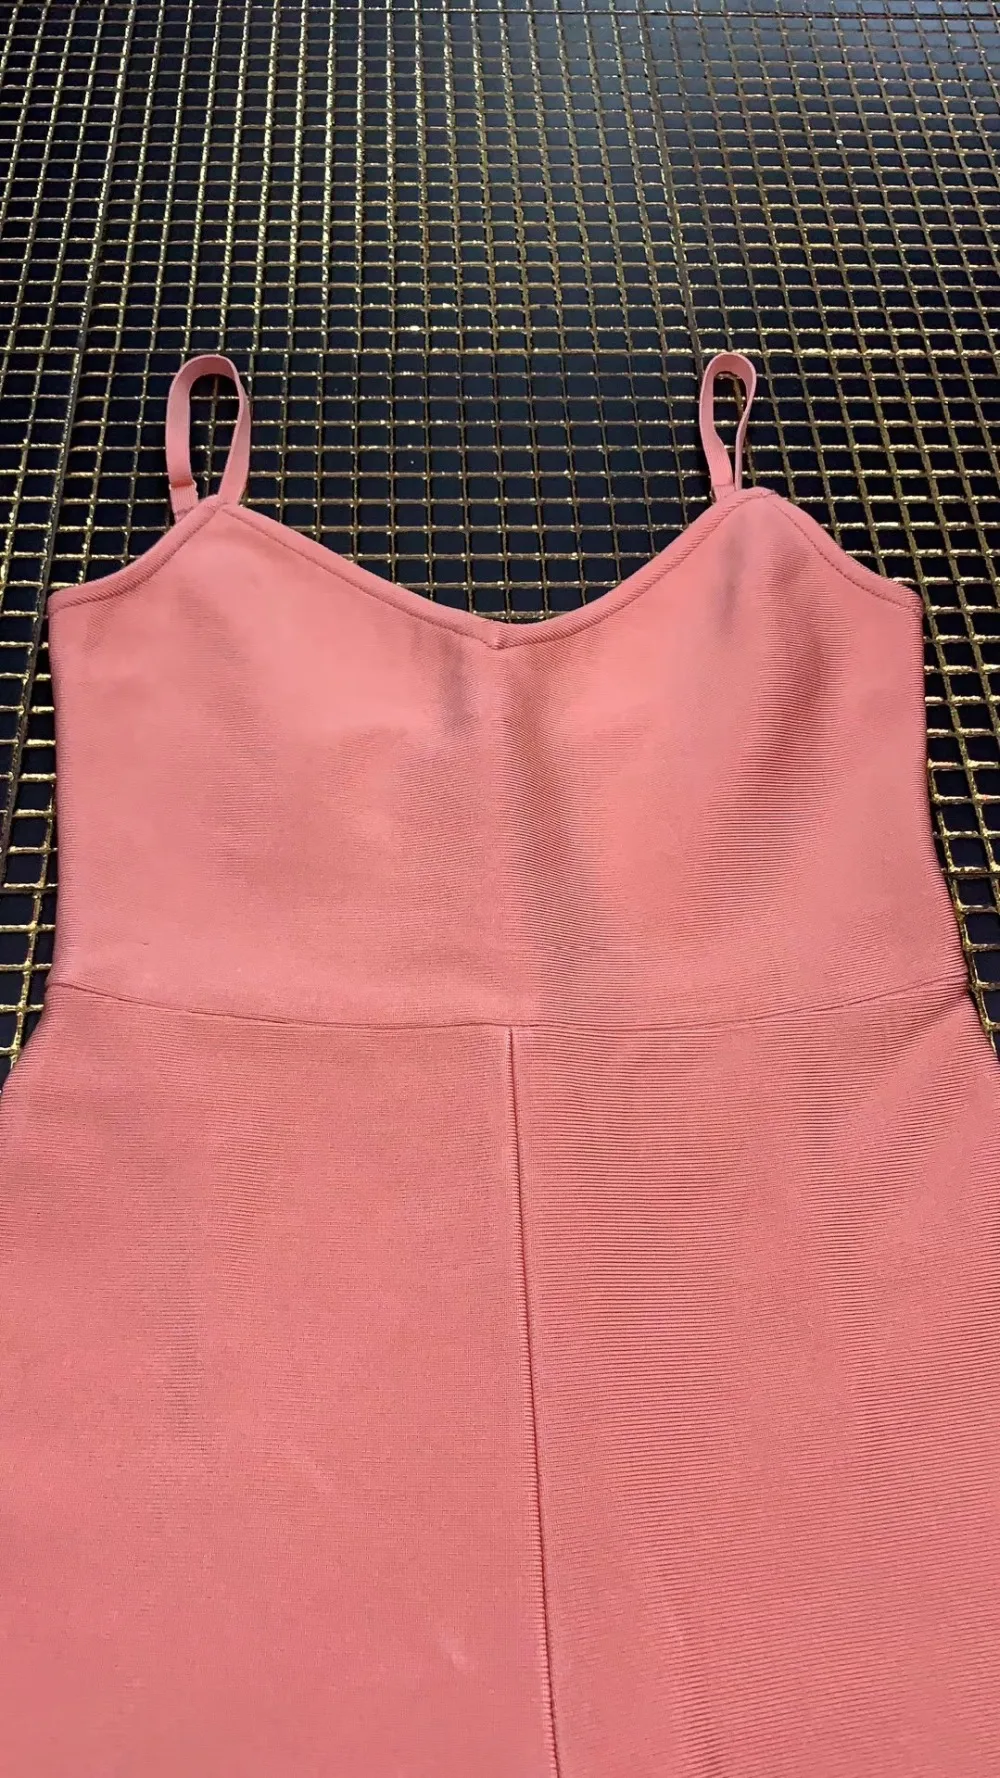 Розовый сплошной цвет Комбинезоны женские сексуальные без рукавов боди фитнес стрейч Bodycon Одежда ремни вискоза бандаж игровой костюм